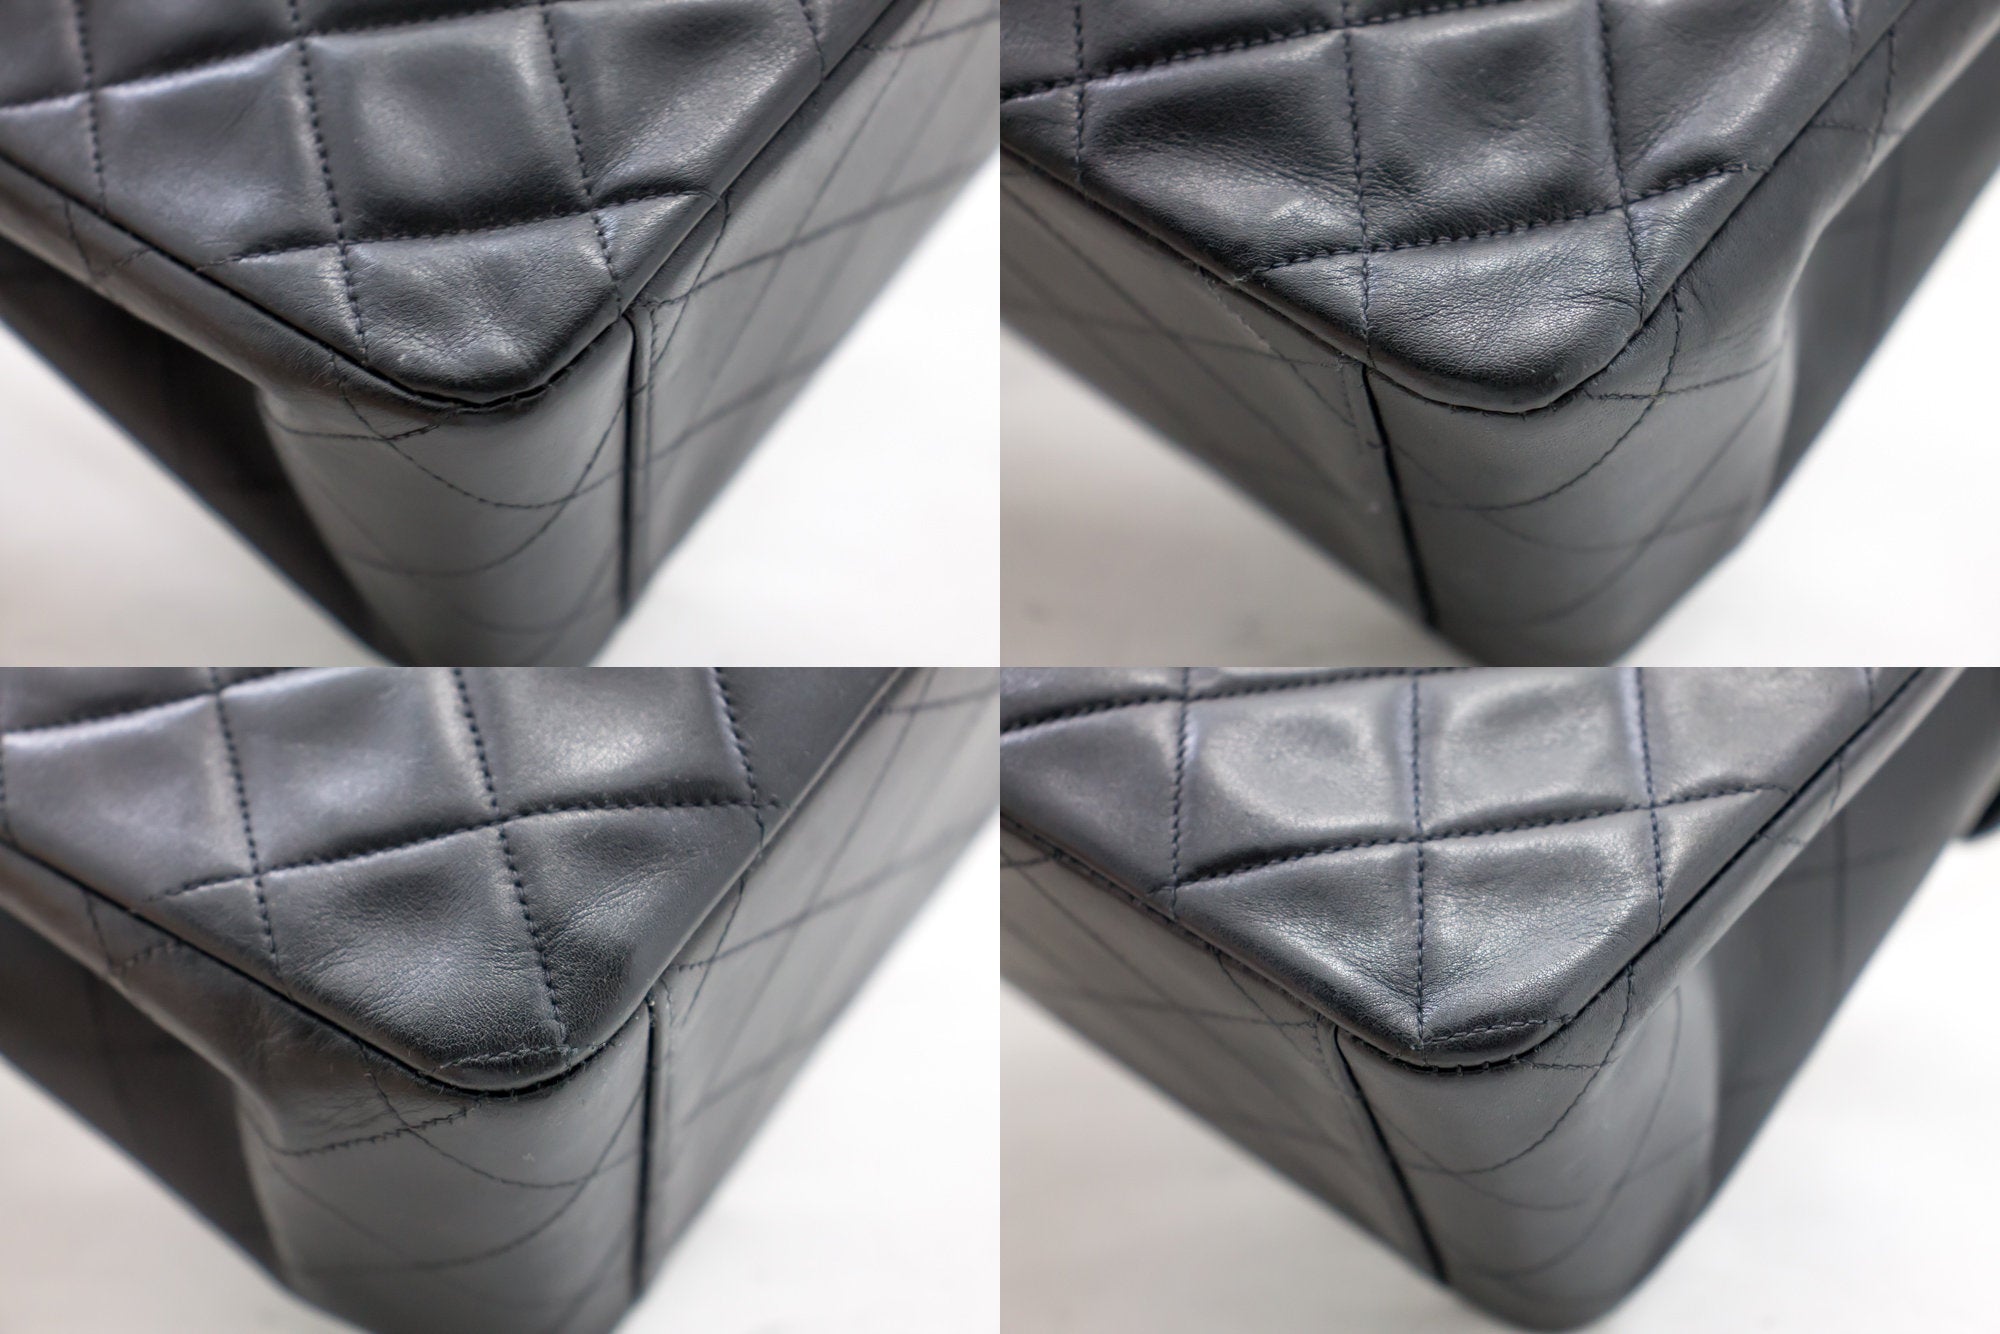 CHANEL Large Classic Handbag 11Chain Shoulder Bag Flap Black Lamb h44 –  hannari-shop